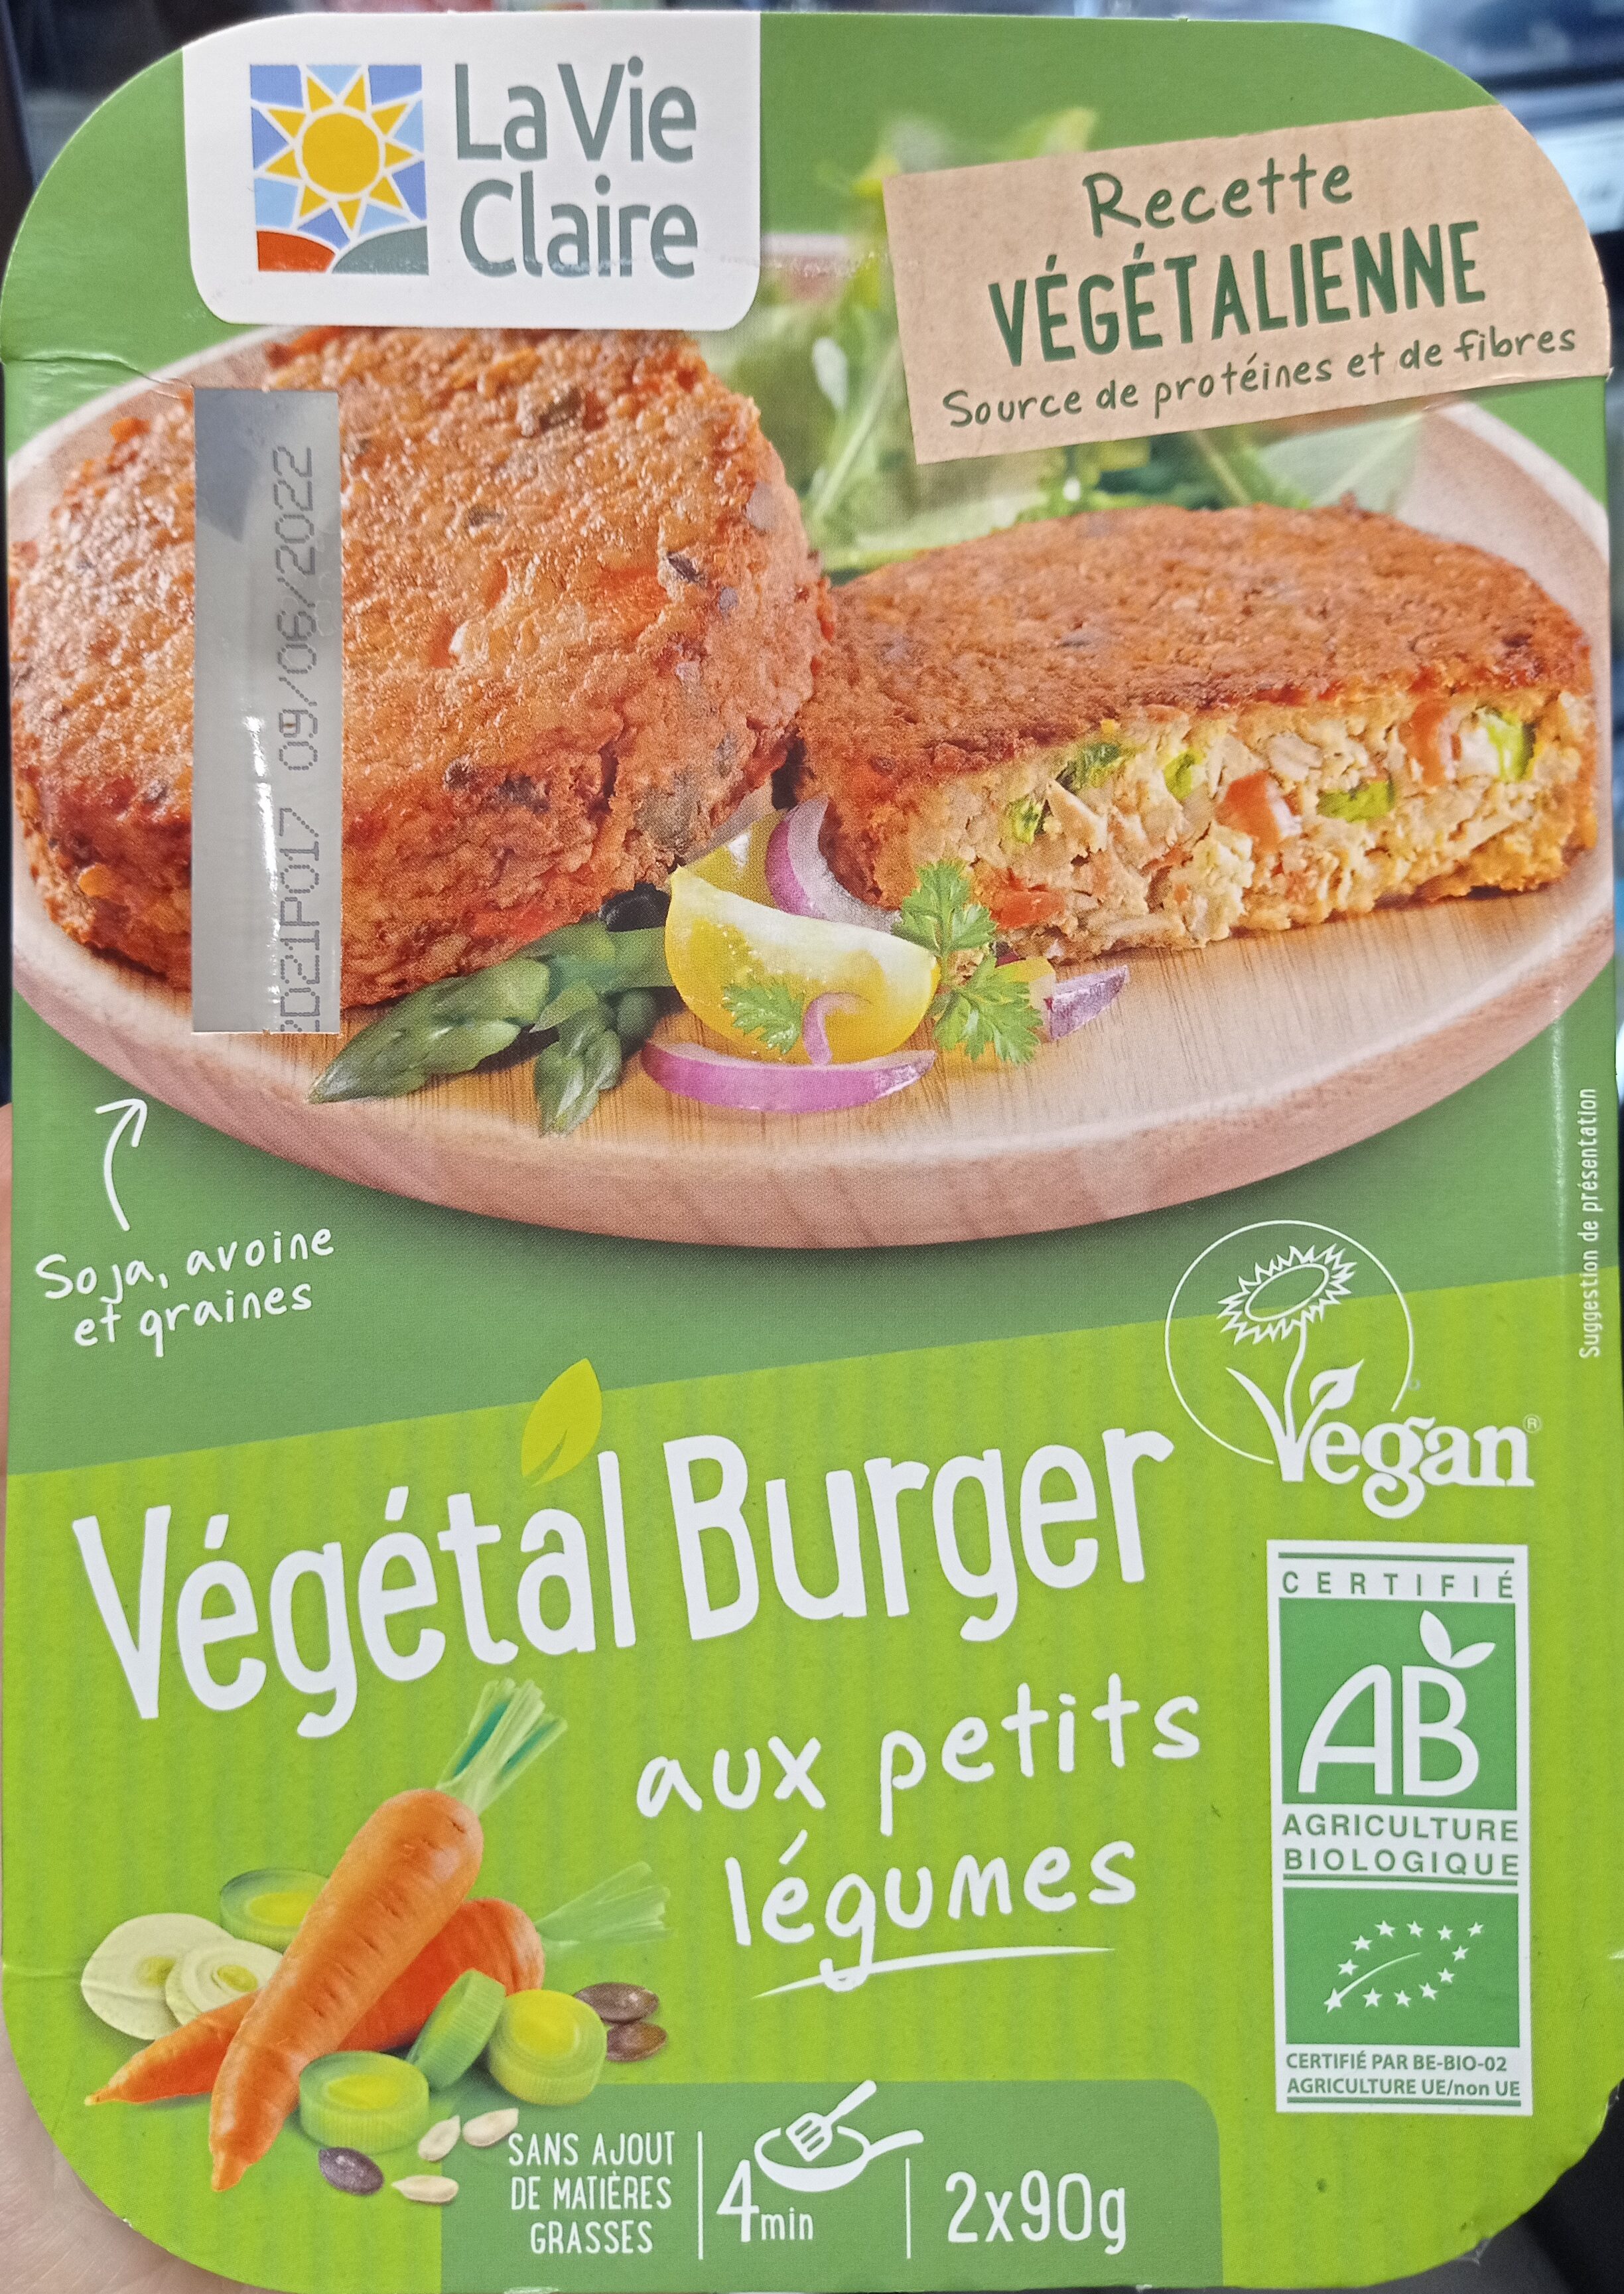 Vegetal burger petits legumes - Product - fr